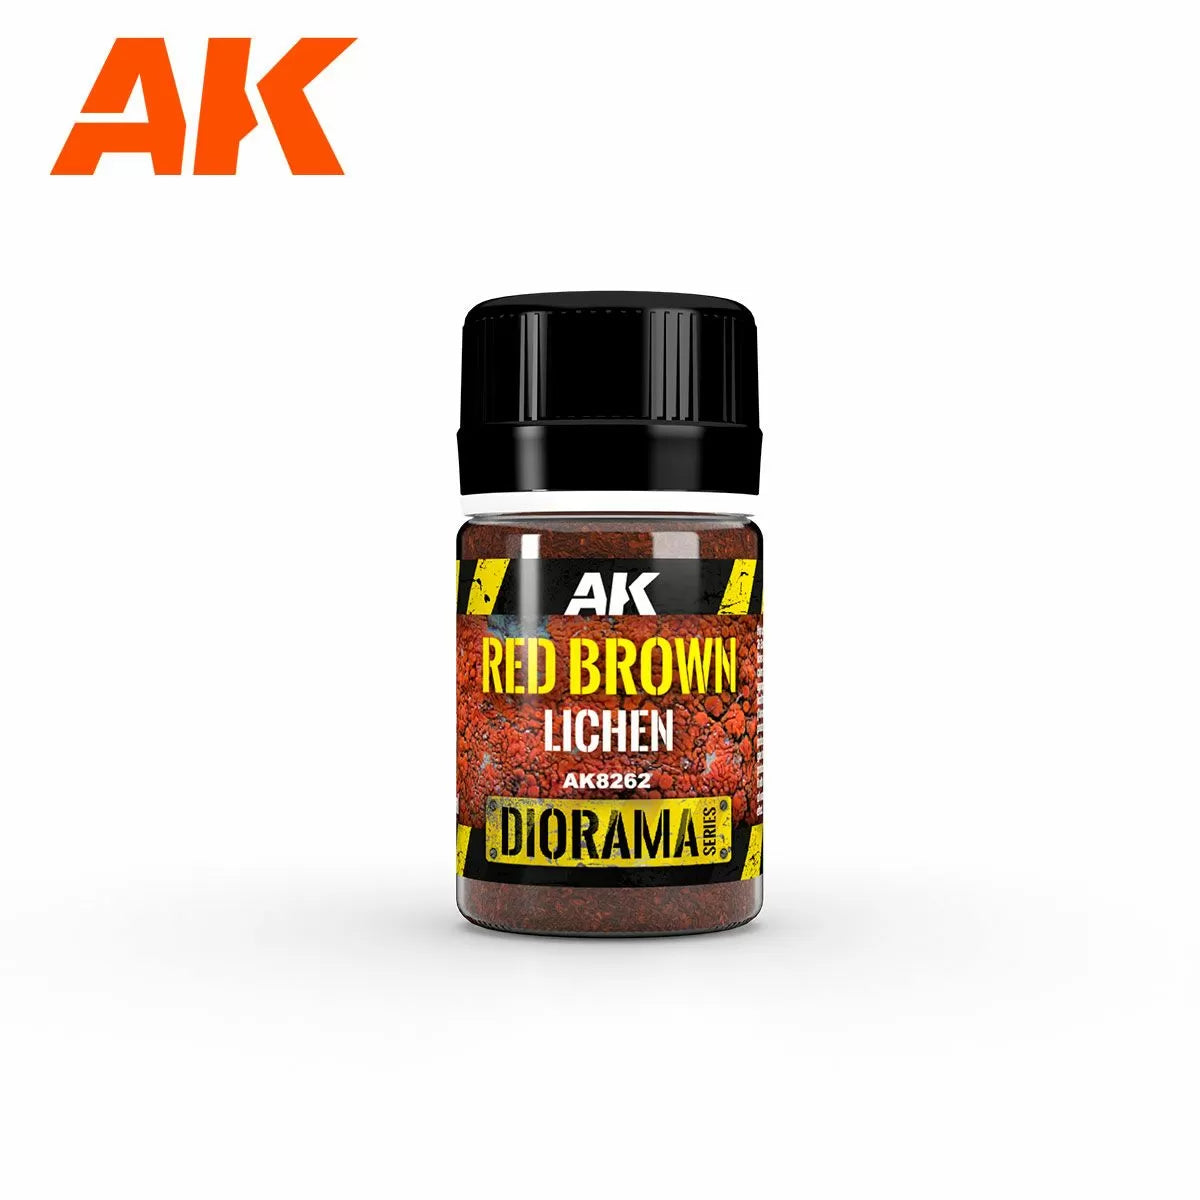 AK Interactive Textures - Red Brown Lichen 35ml